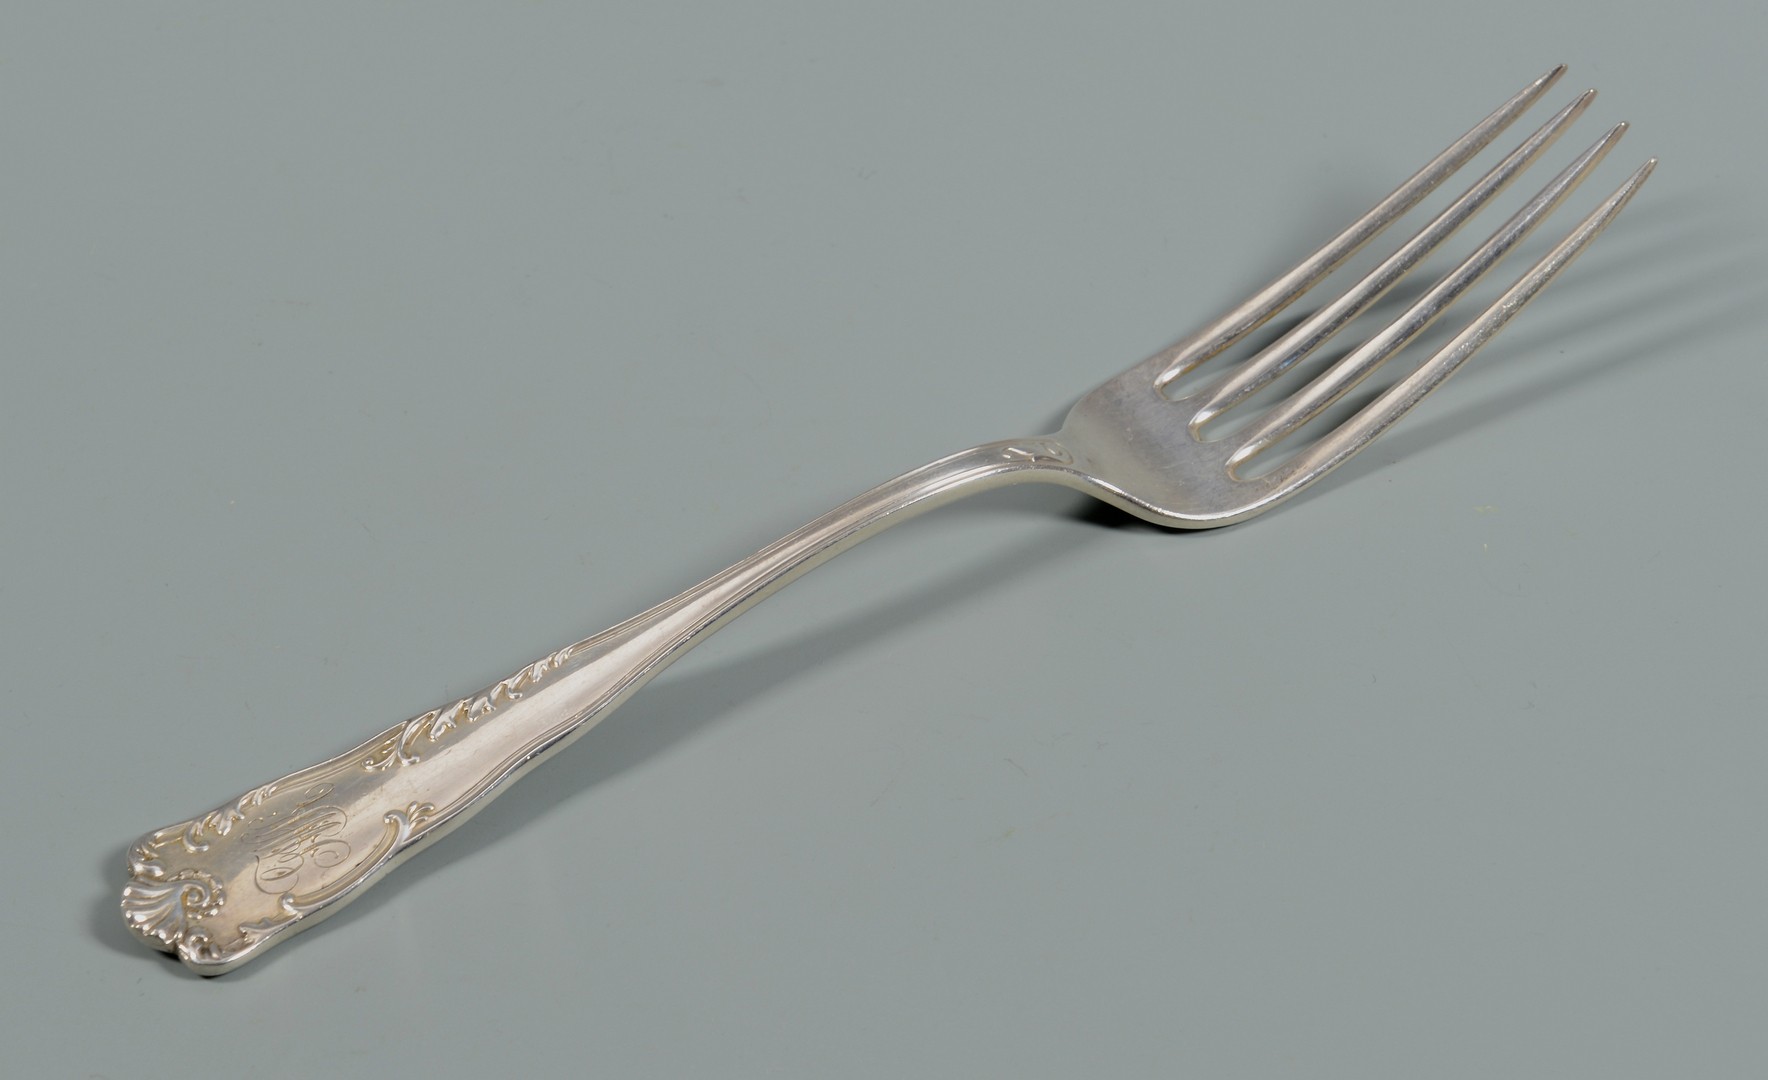 Lot 829: 29 spoons & forks incl. Shiebler